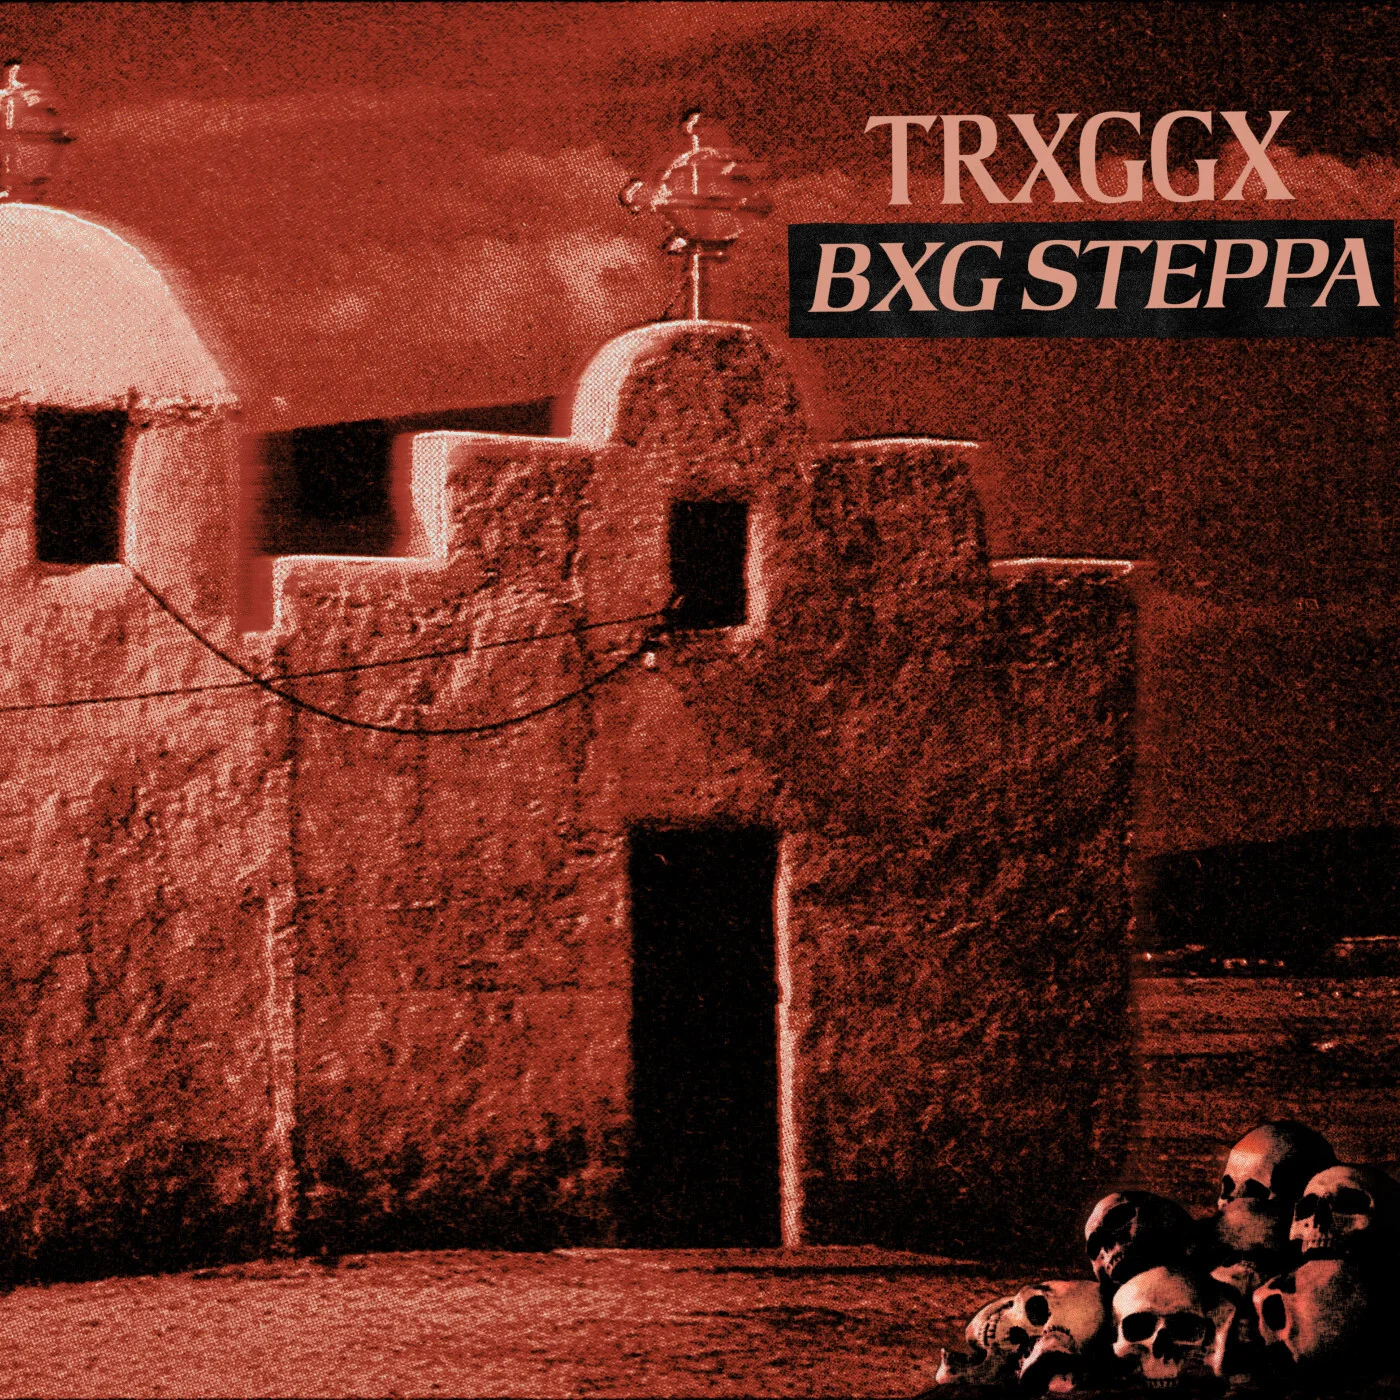 Trxggx - Bxg Steppa (Original Mix)